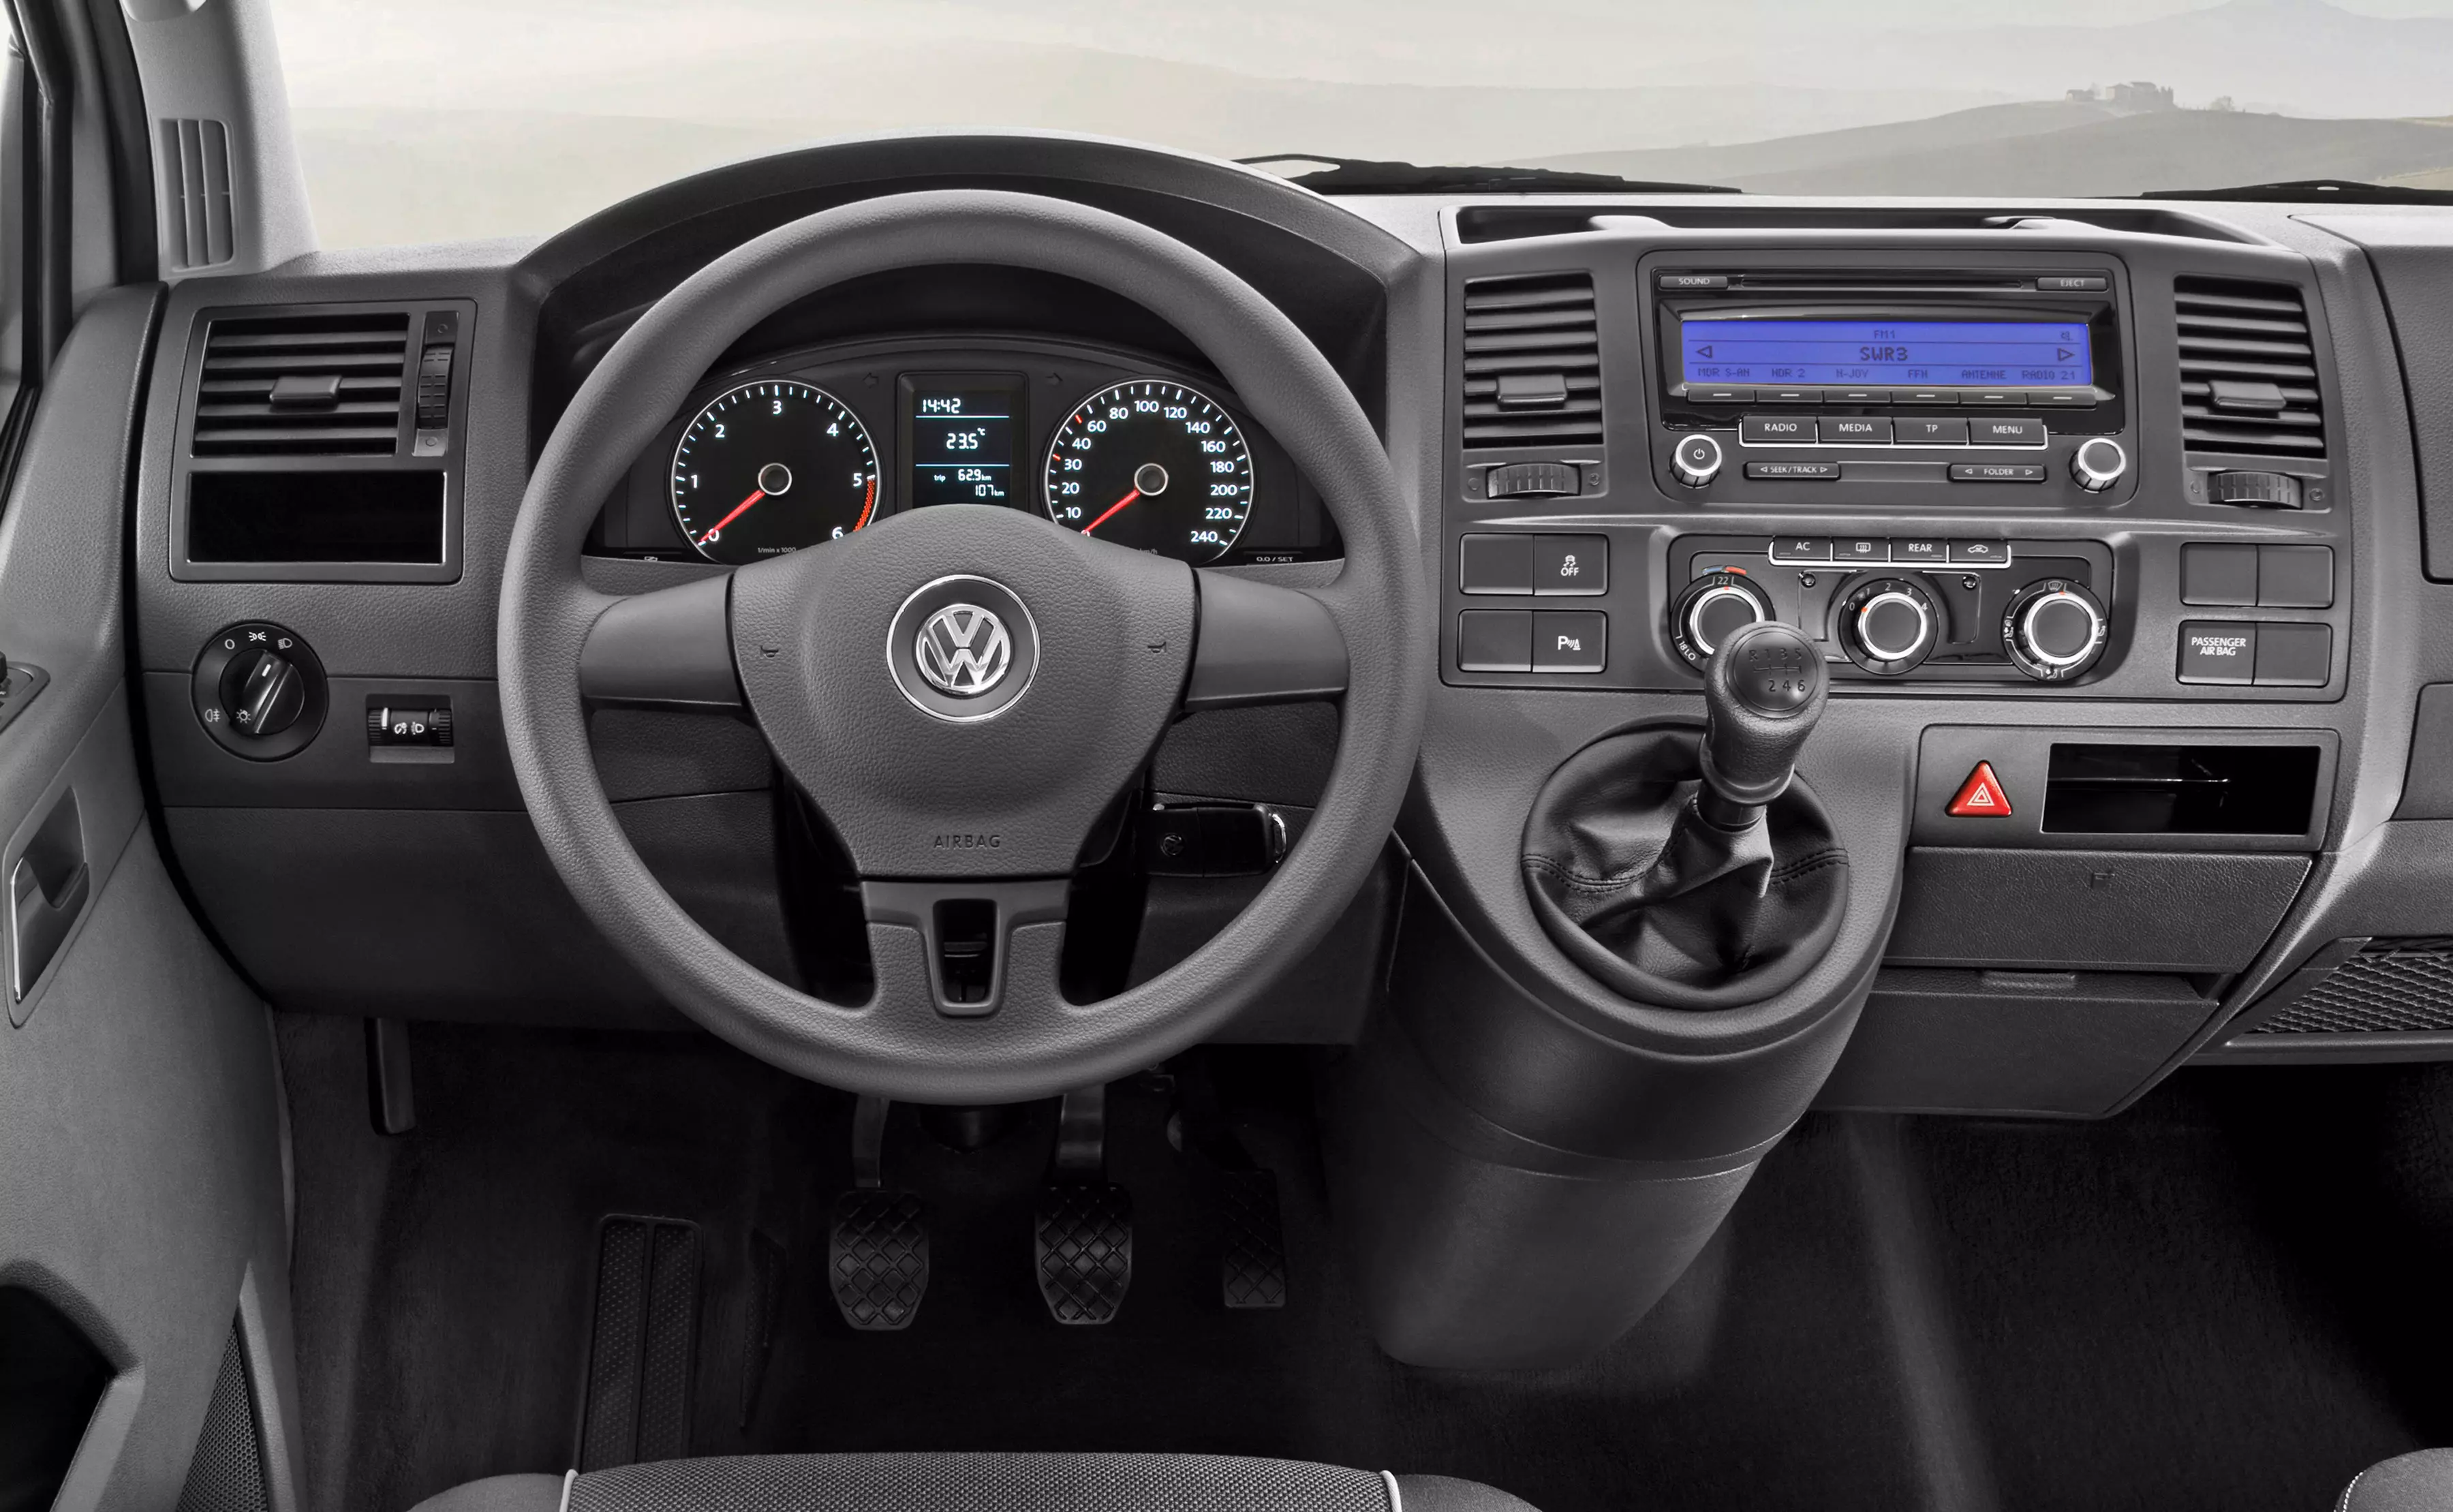 Volkswagen T5 common problems (2003 - 2015)